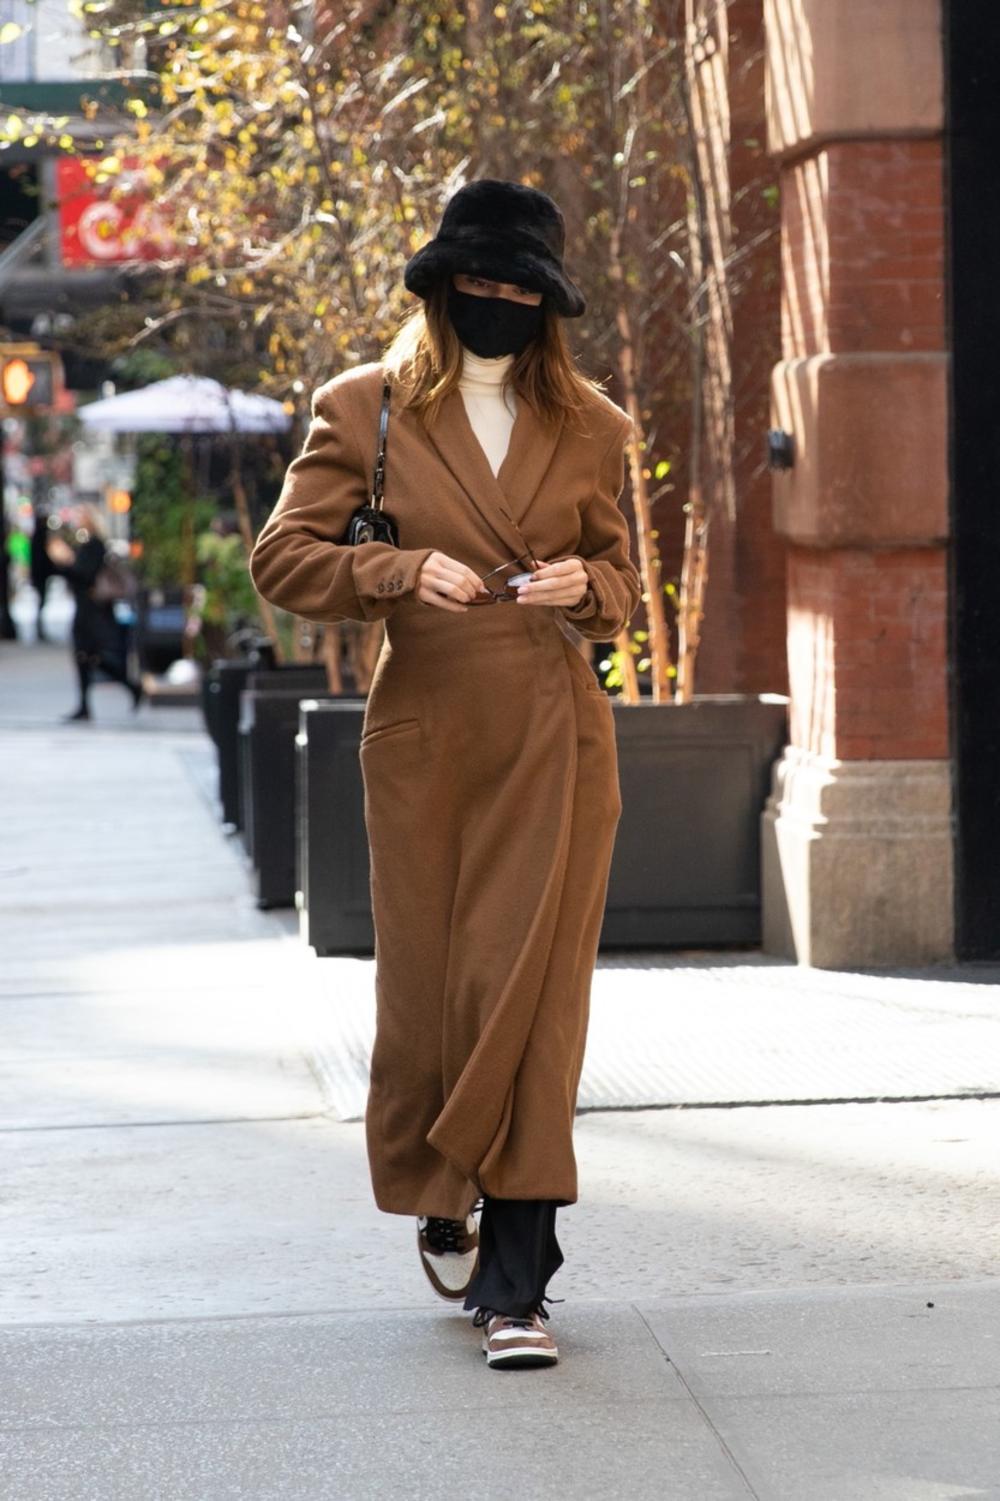 <p>Moderni kaput, crna kapa... Kendal Džener iznela je interesantan i šik stajling za jesenji dan u Njujorku</p>